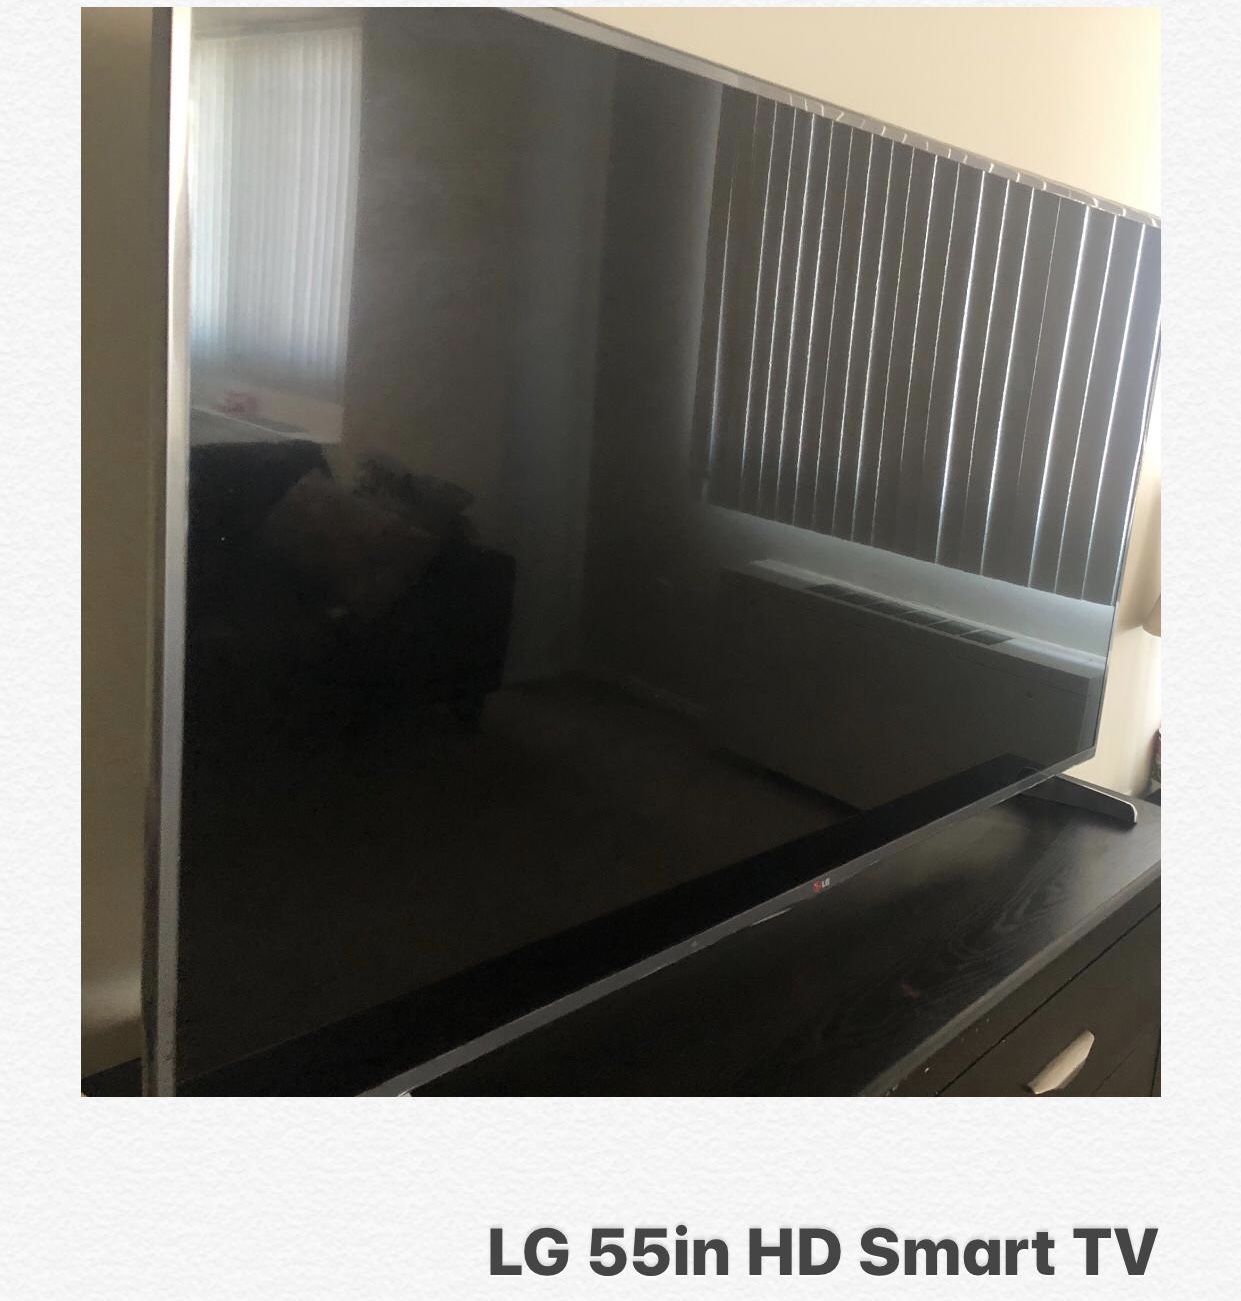 LG 55in HD Smart TV